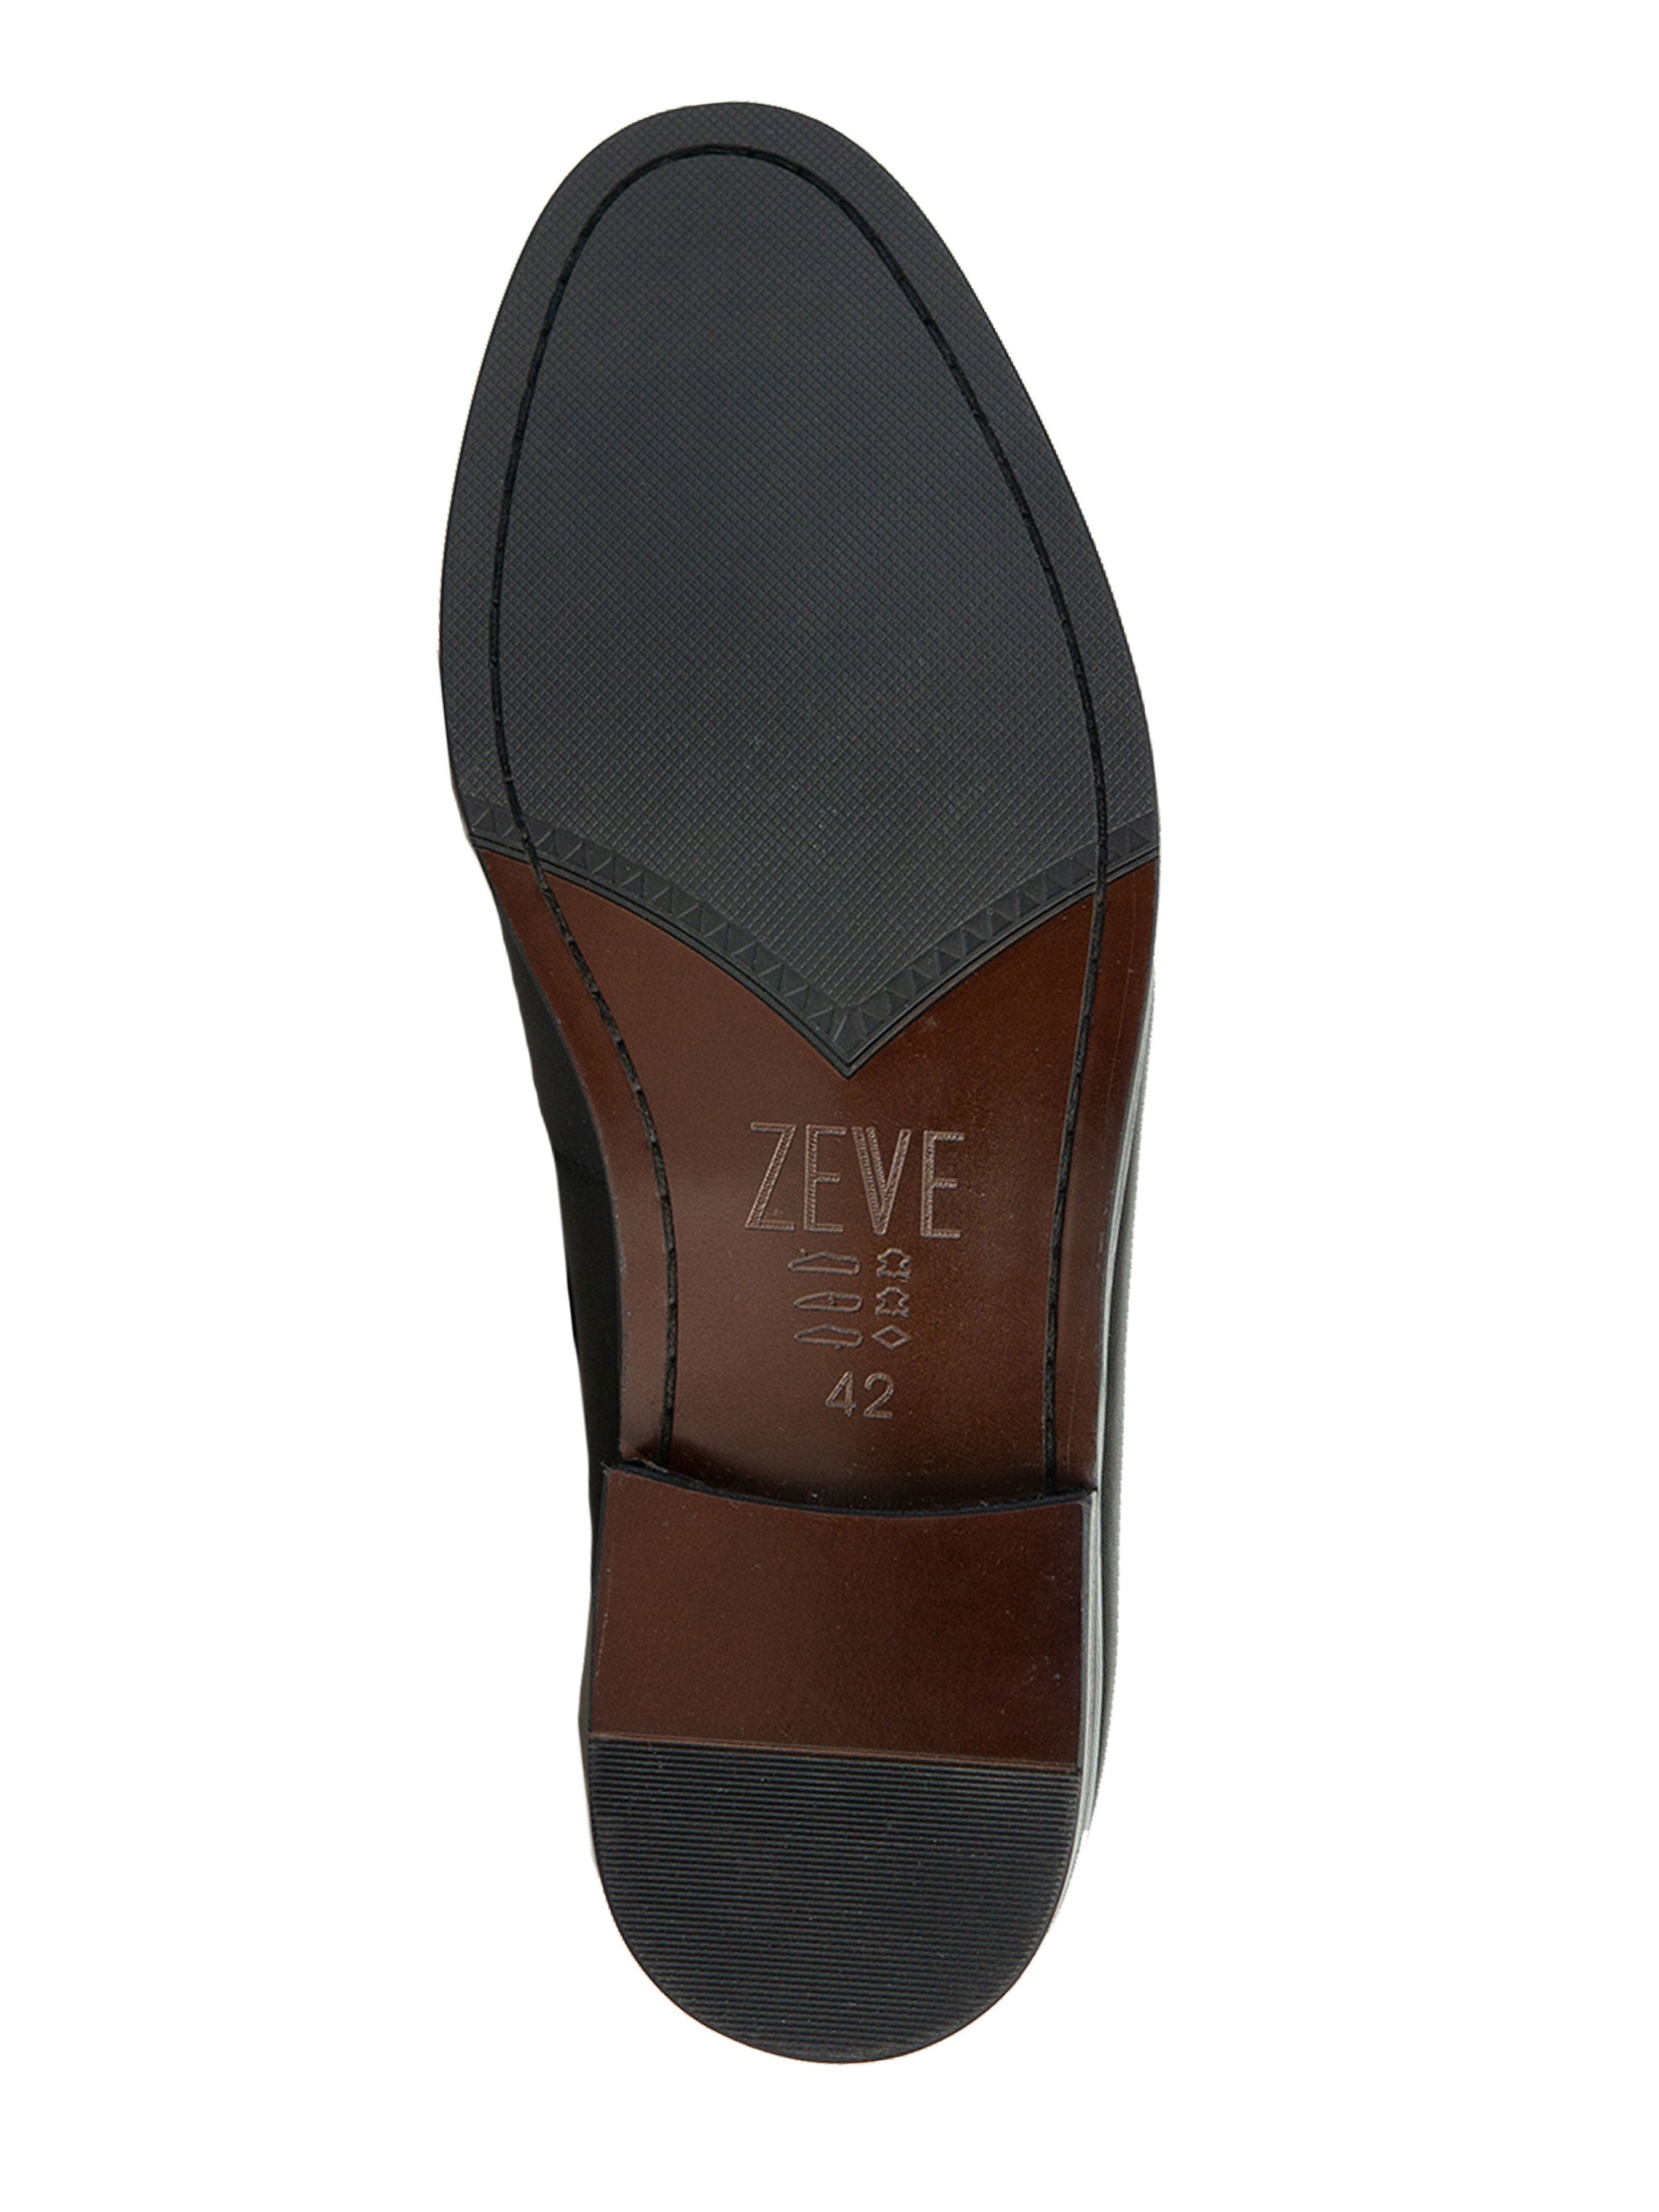 Horsebit Moccasin Loafer - Solid Black - Zeve Shoes